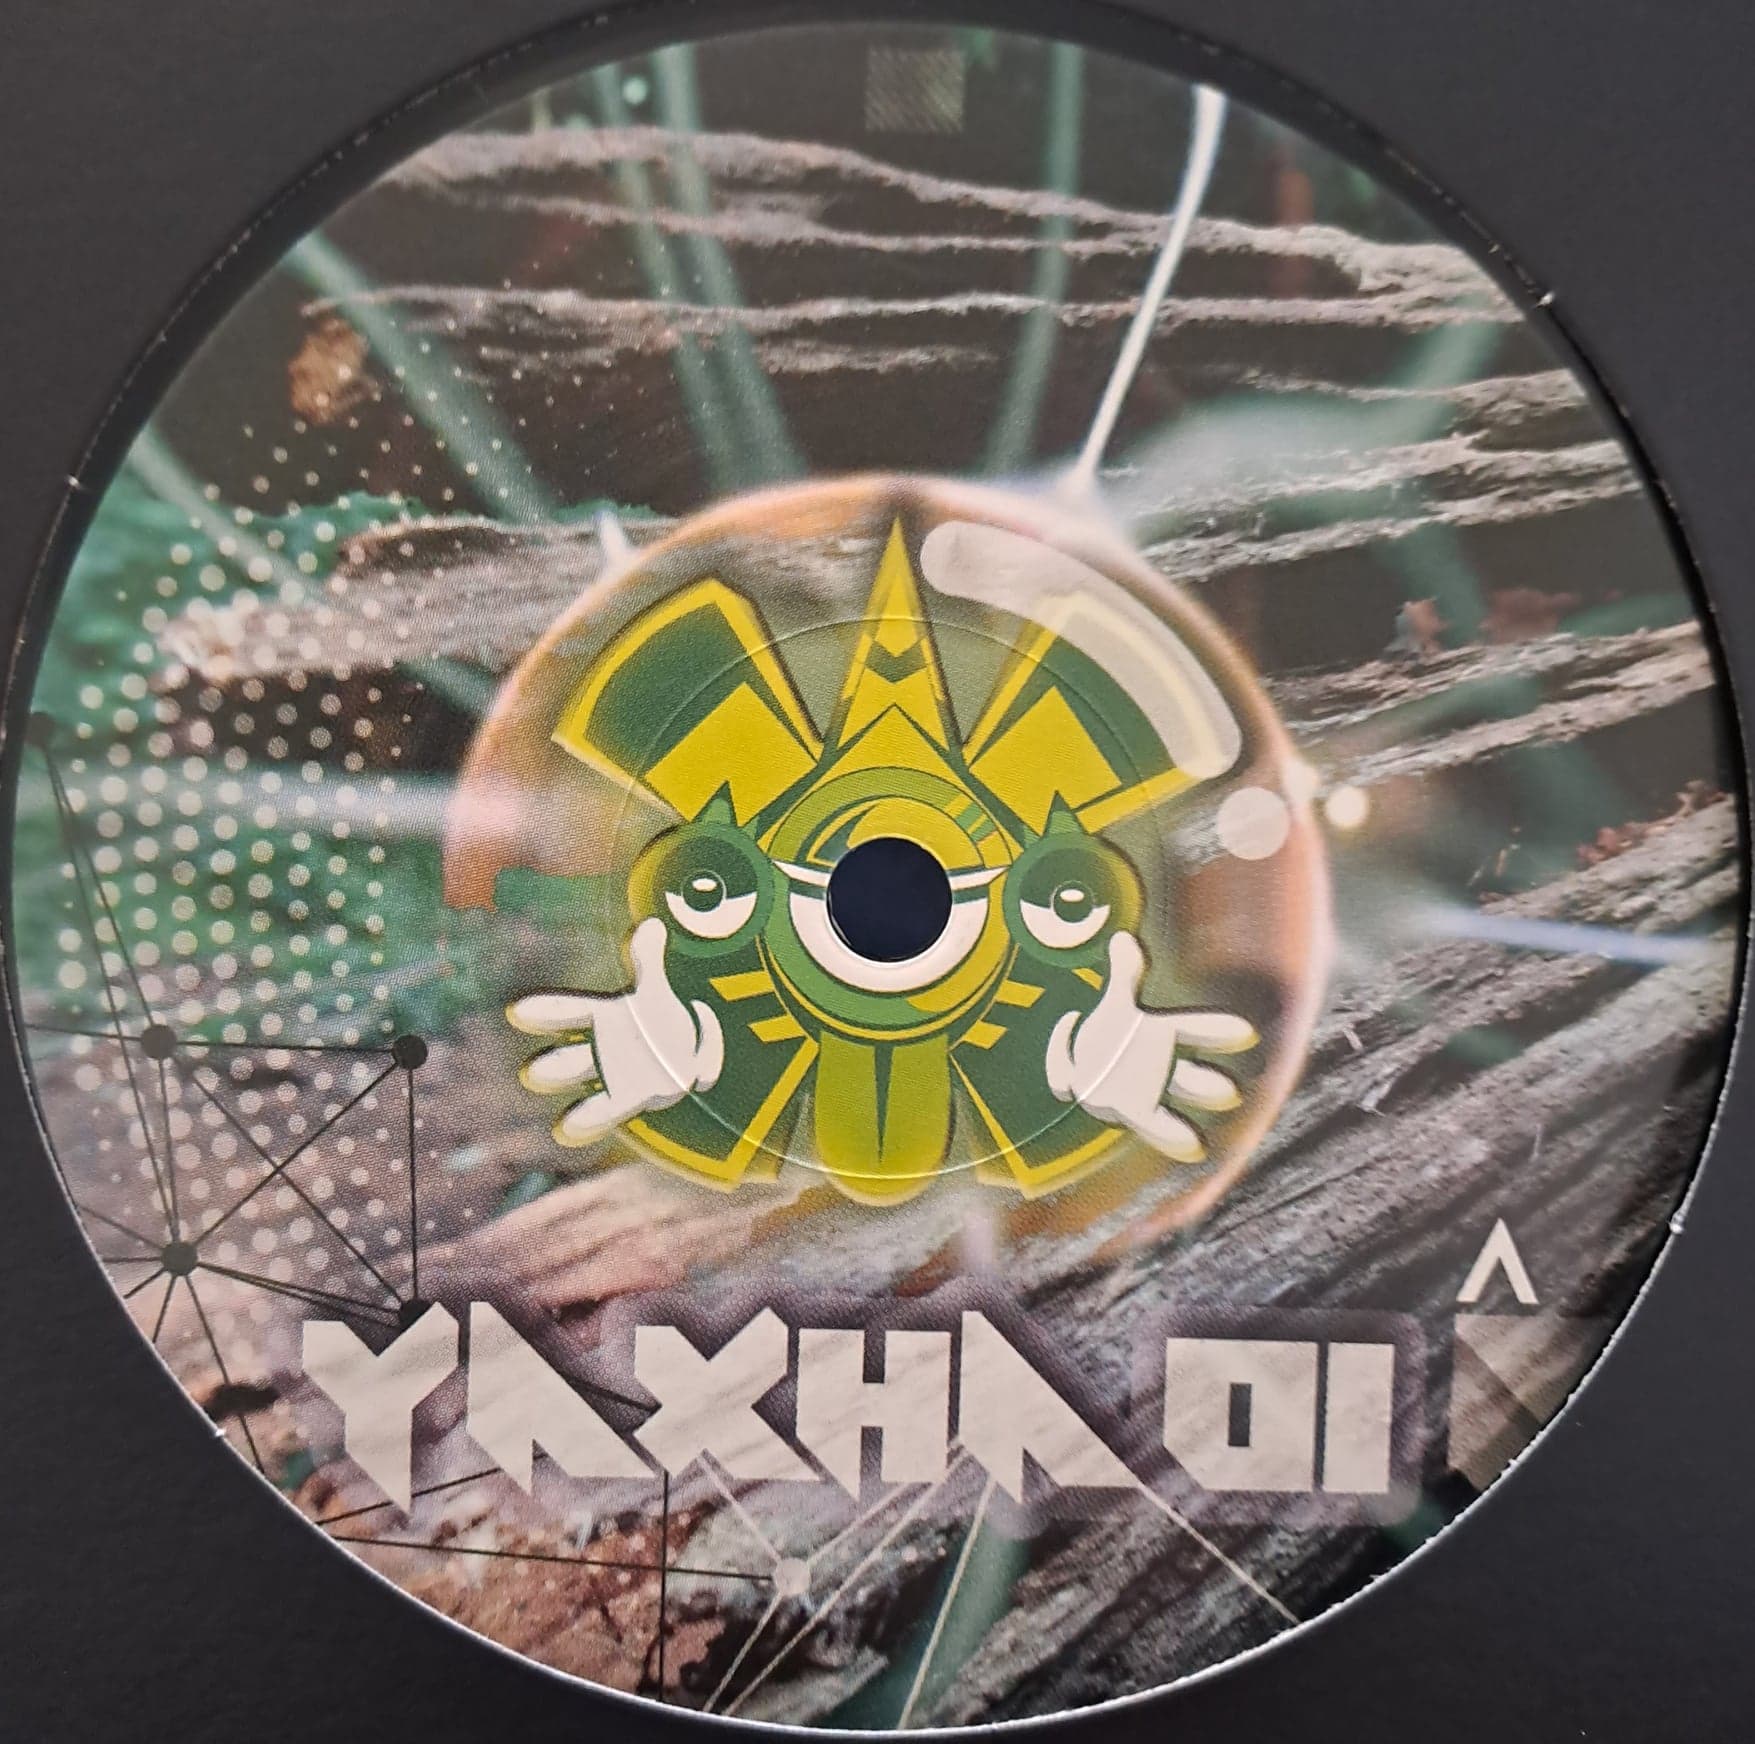 Yaxha 01 (dernières copies en stock) - vinyle Breakbeat
